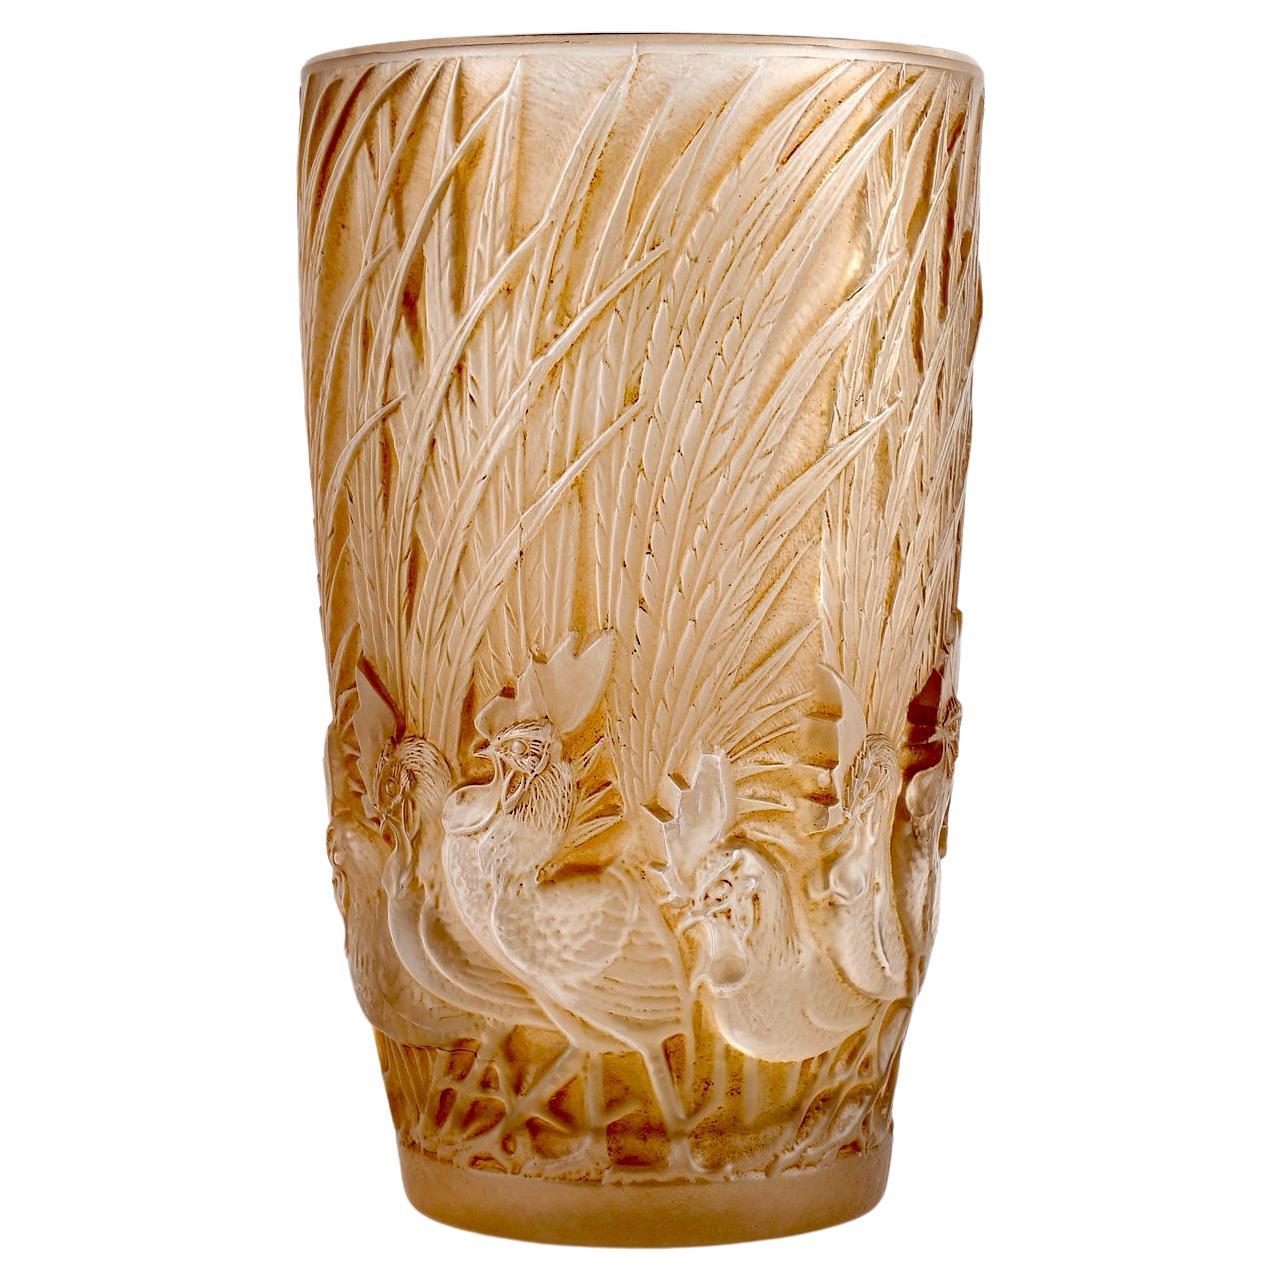 1928 Rene Lalique Vase Coqs et Plumes Glas Sepia Patina